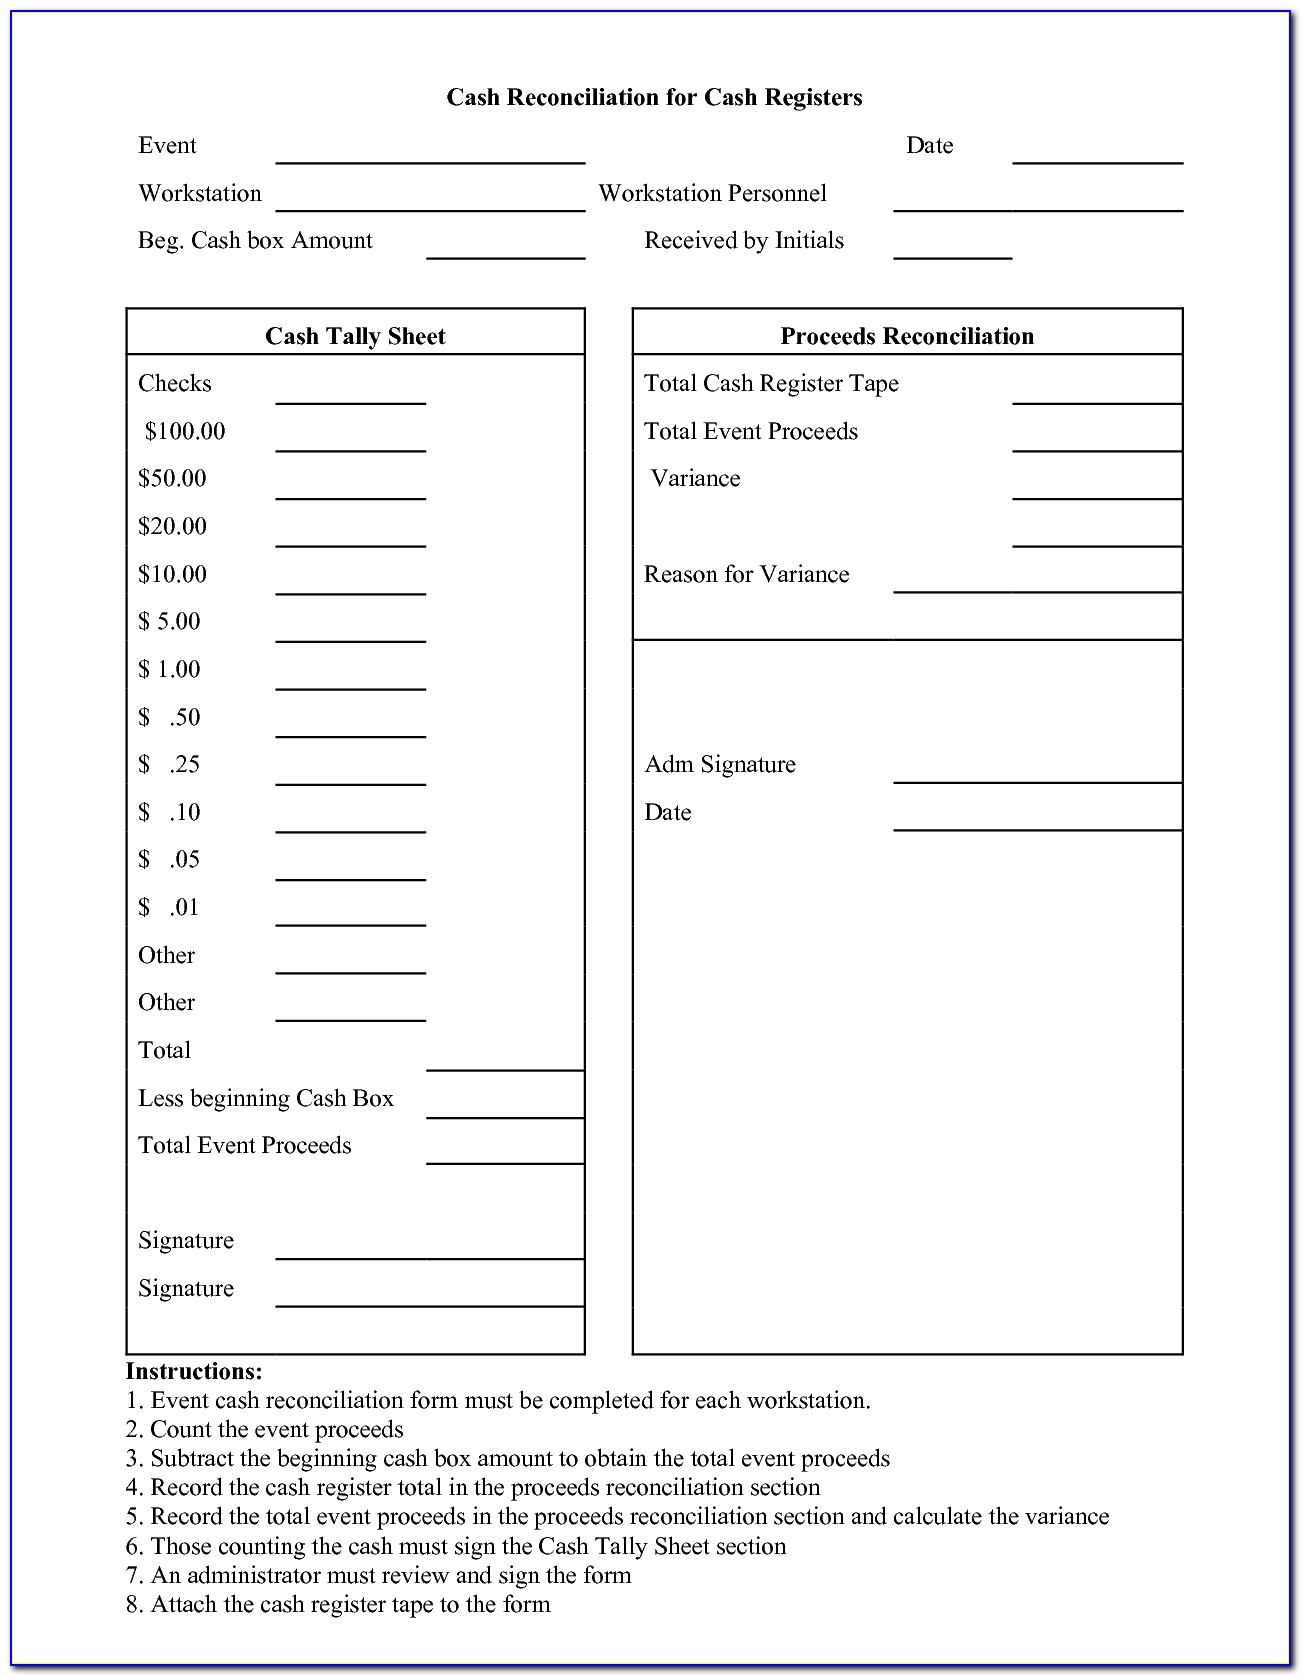 Cash Register Reconciliation Form